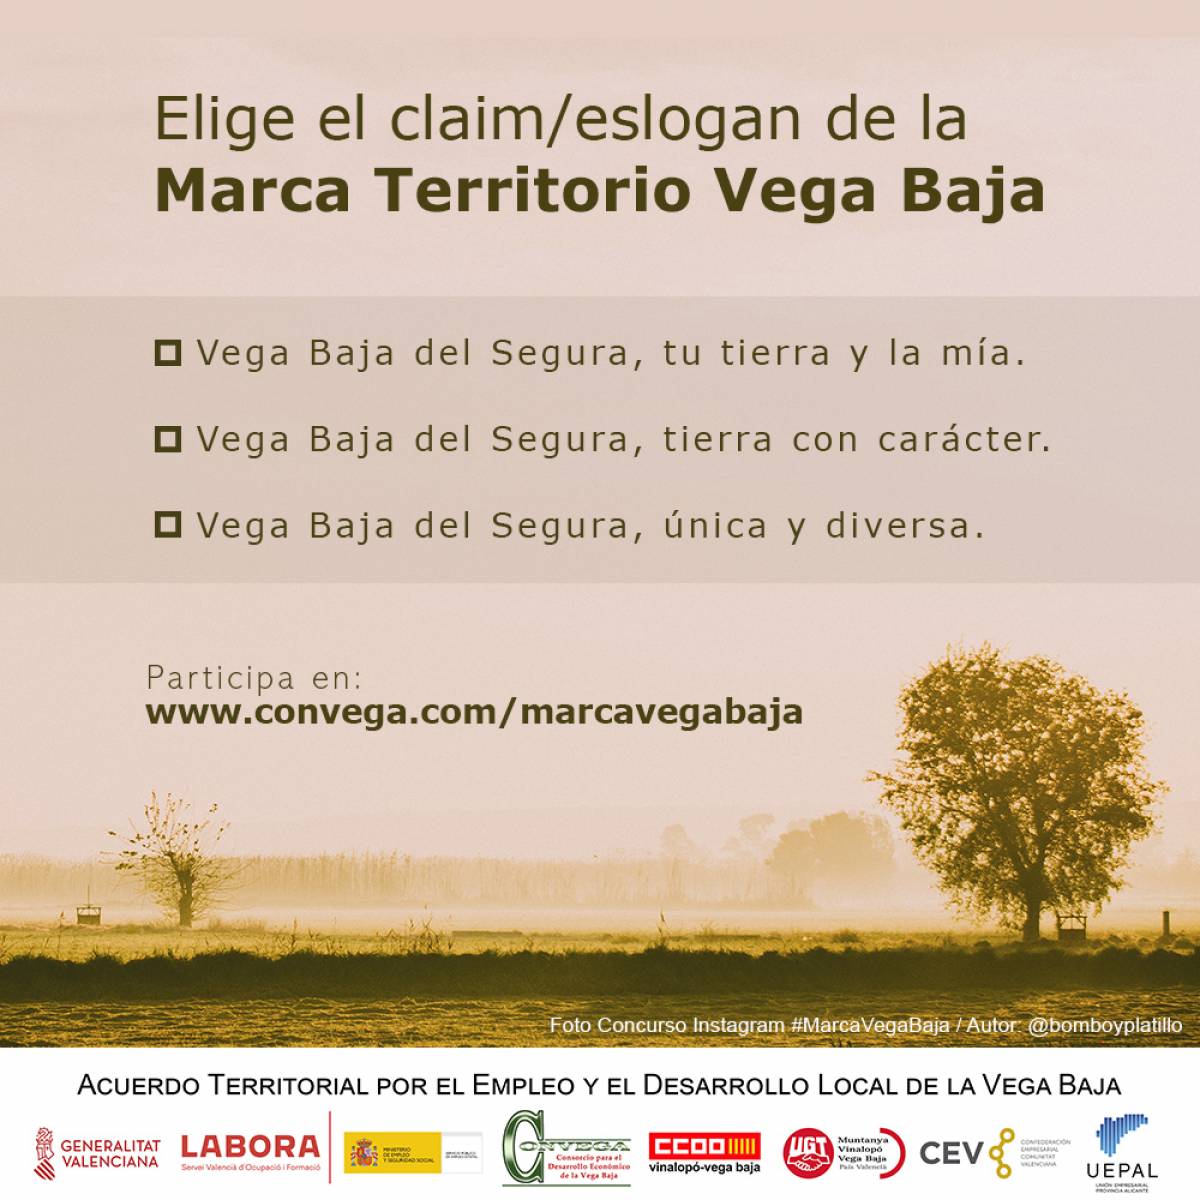 Un eslogan para la marca Vega Baja